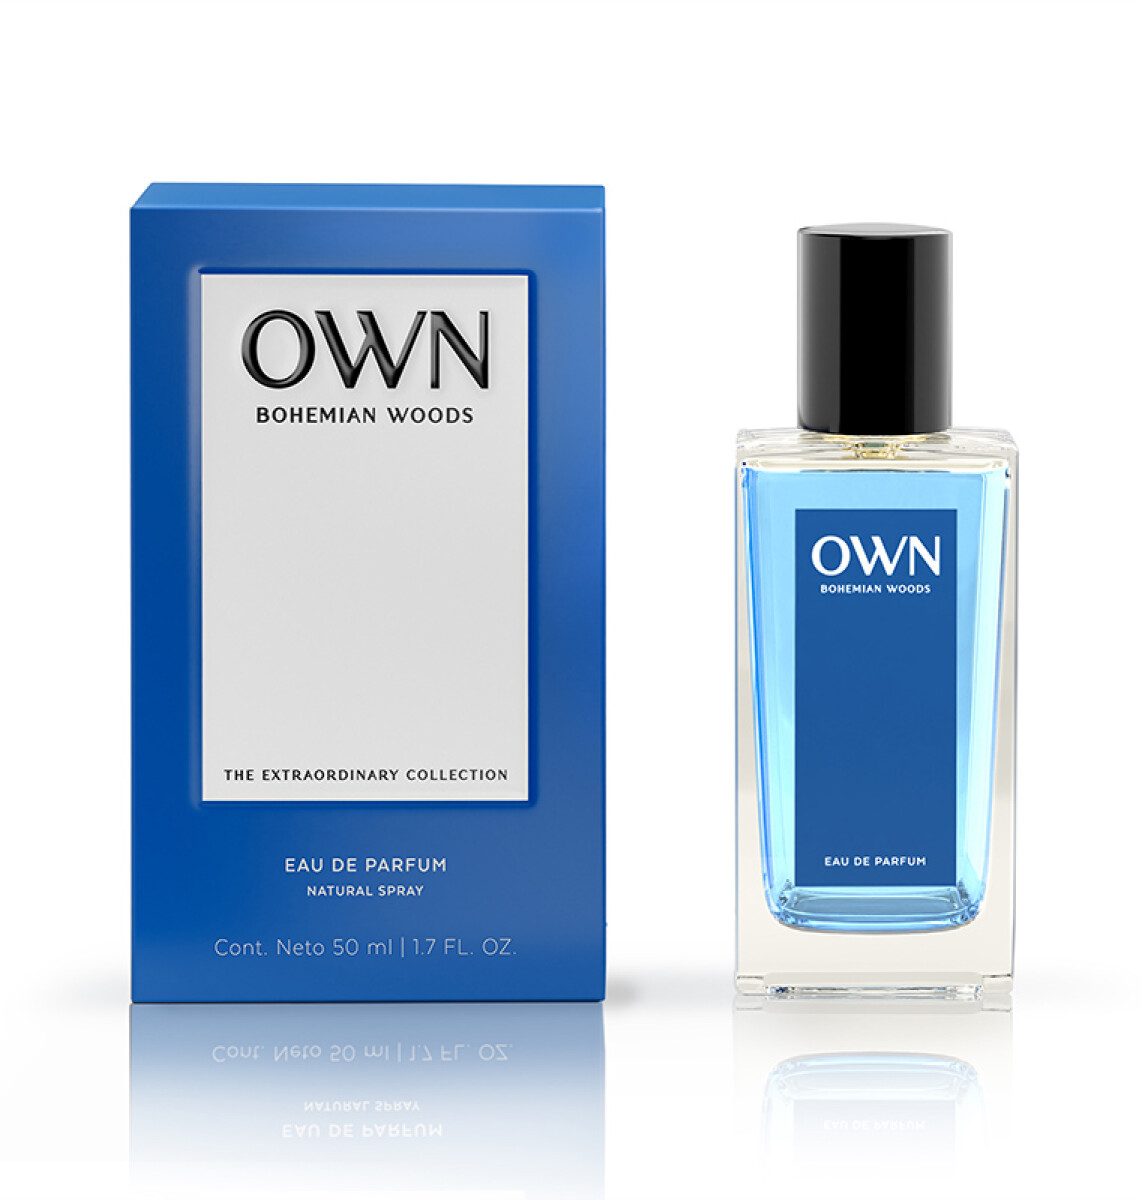 Own eau de parfum 50 ml - Bohemian woods 